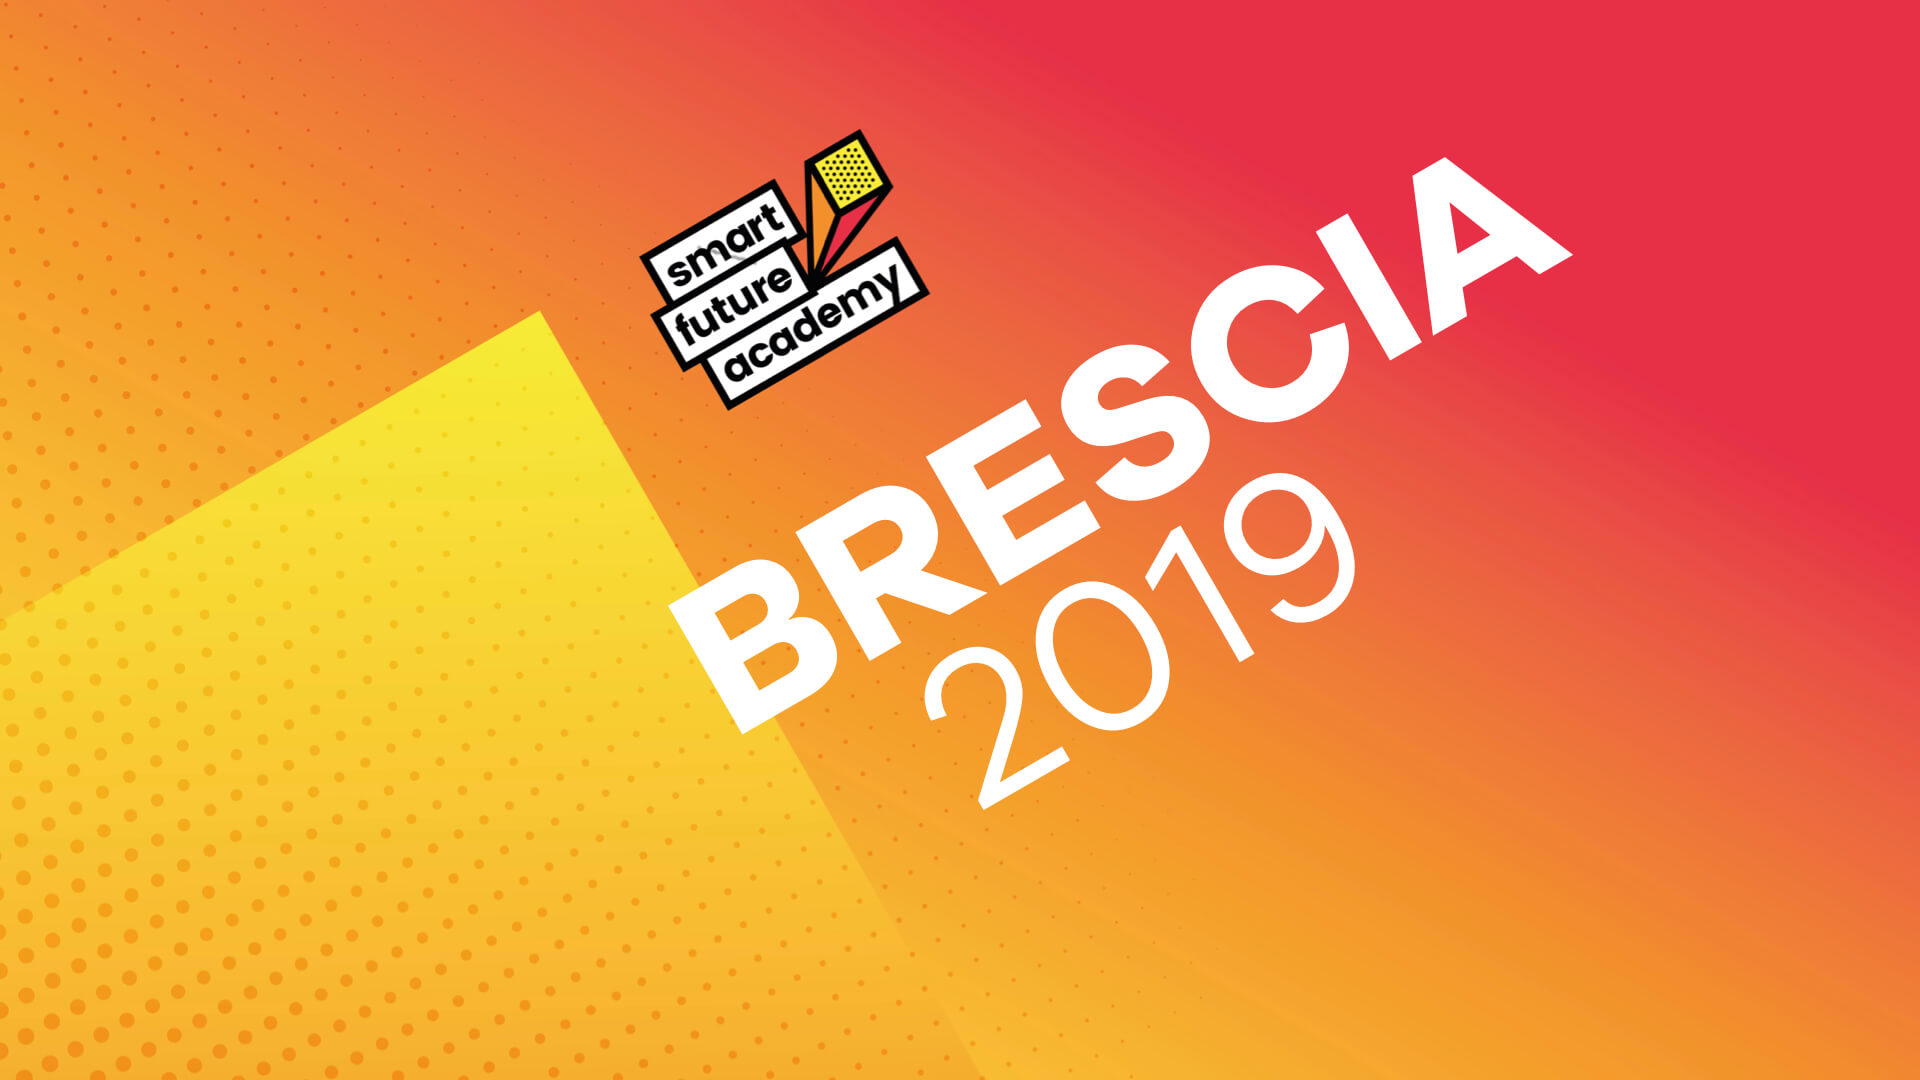 Brescia 2019